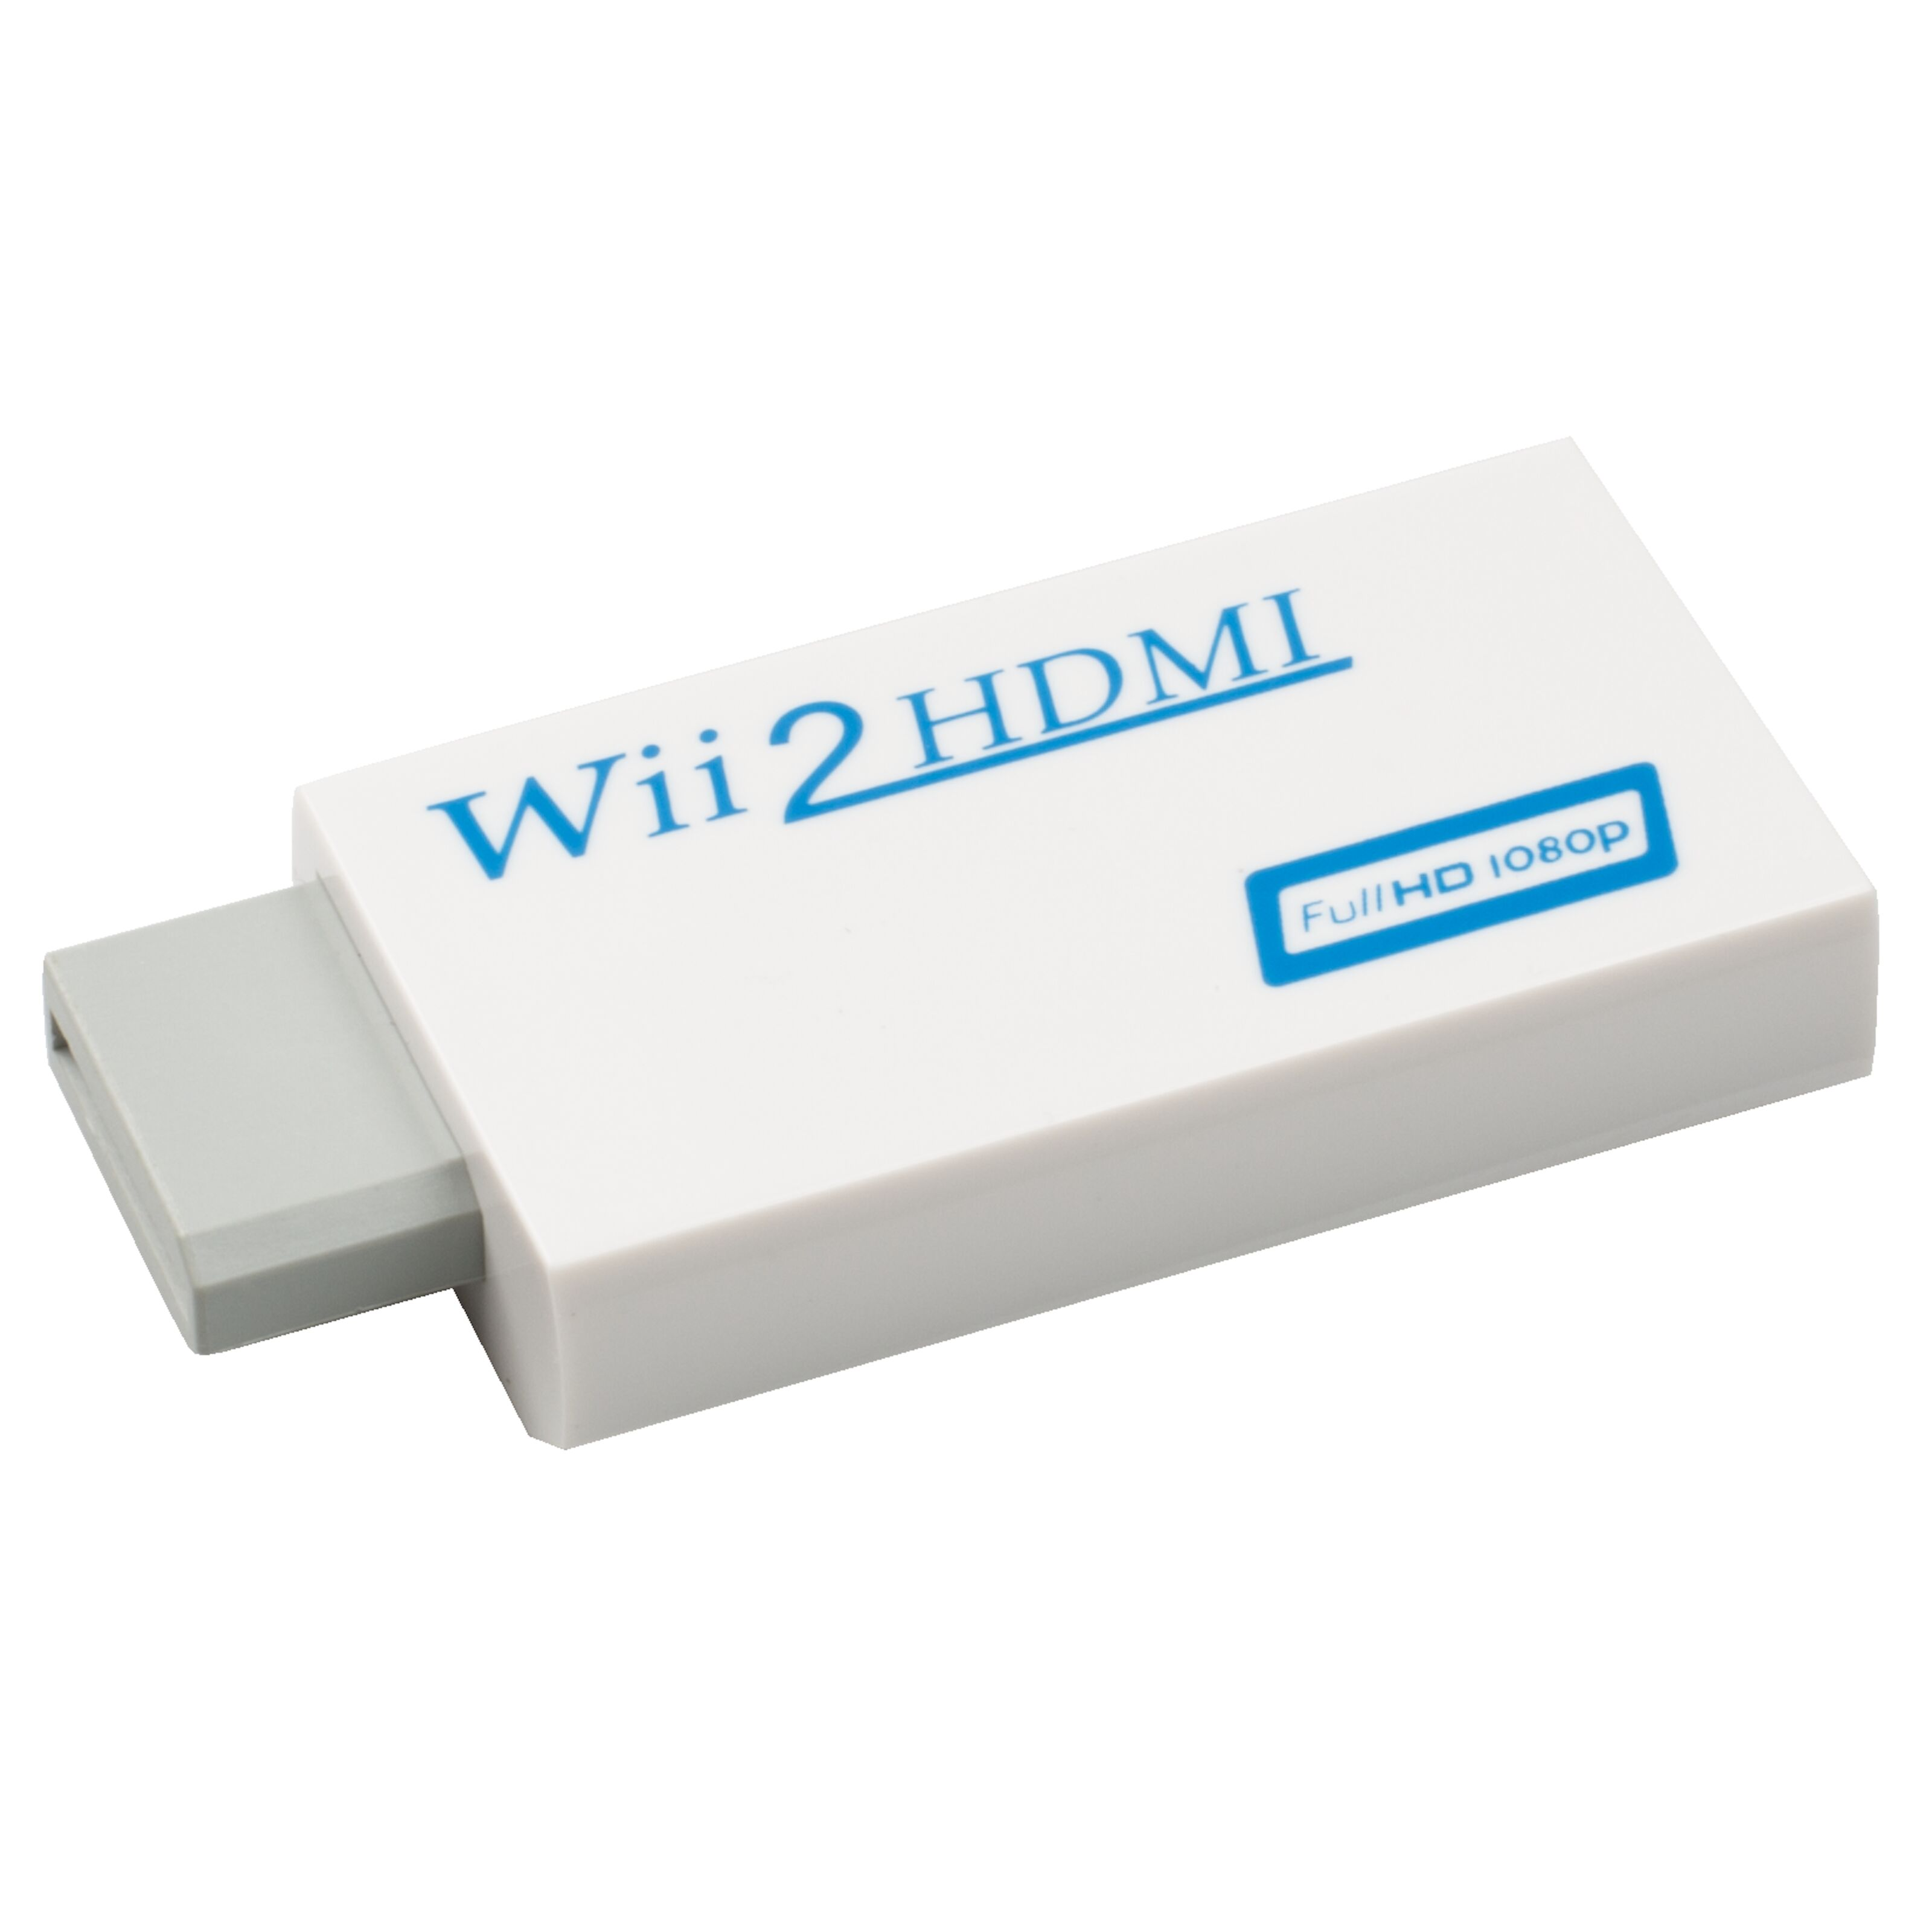 HDMI-adapter till Nintendo Wii. HDMI-adapter